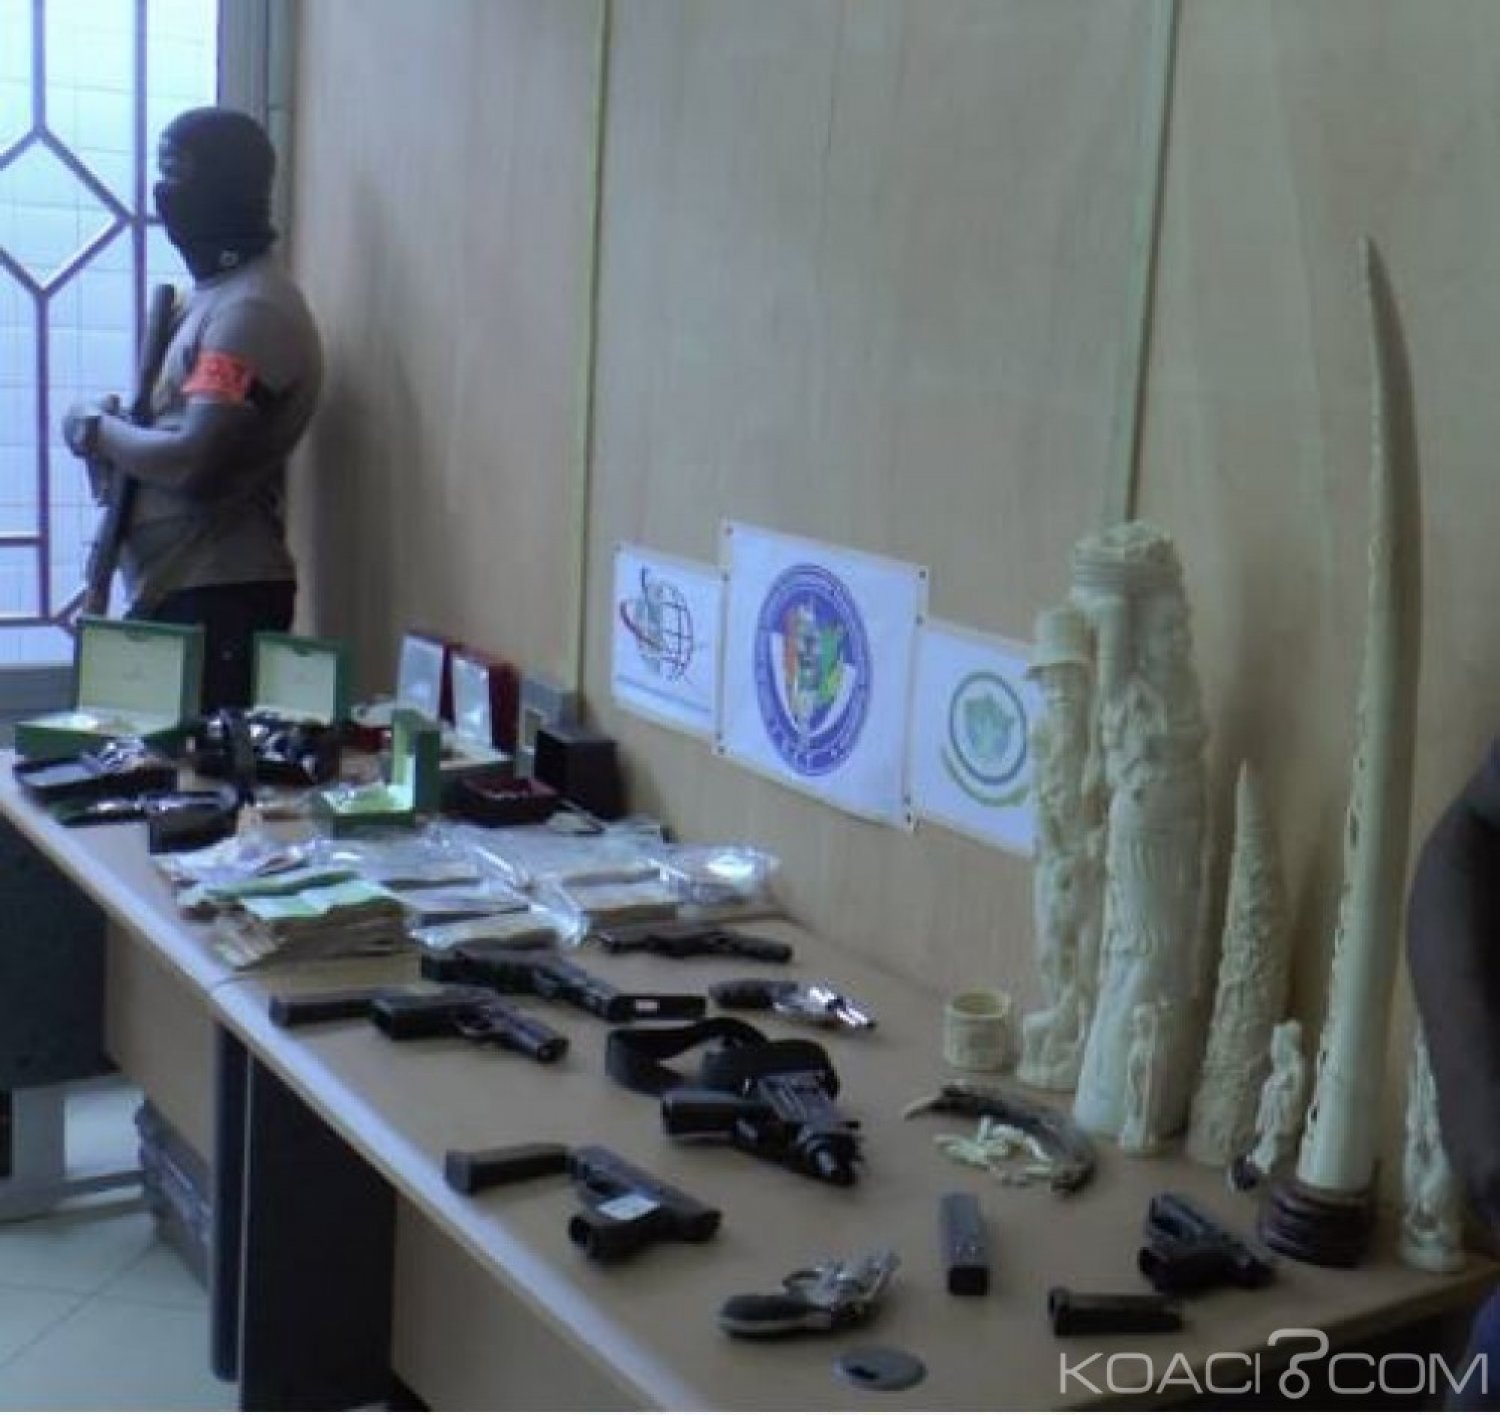 Côte d'Ivoire : Réseau international de trafiquants 06 Italiens, 01 Franco-turque et 03 Ivoiriens interpellés en possession de drogue, armes, véhicules et montres